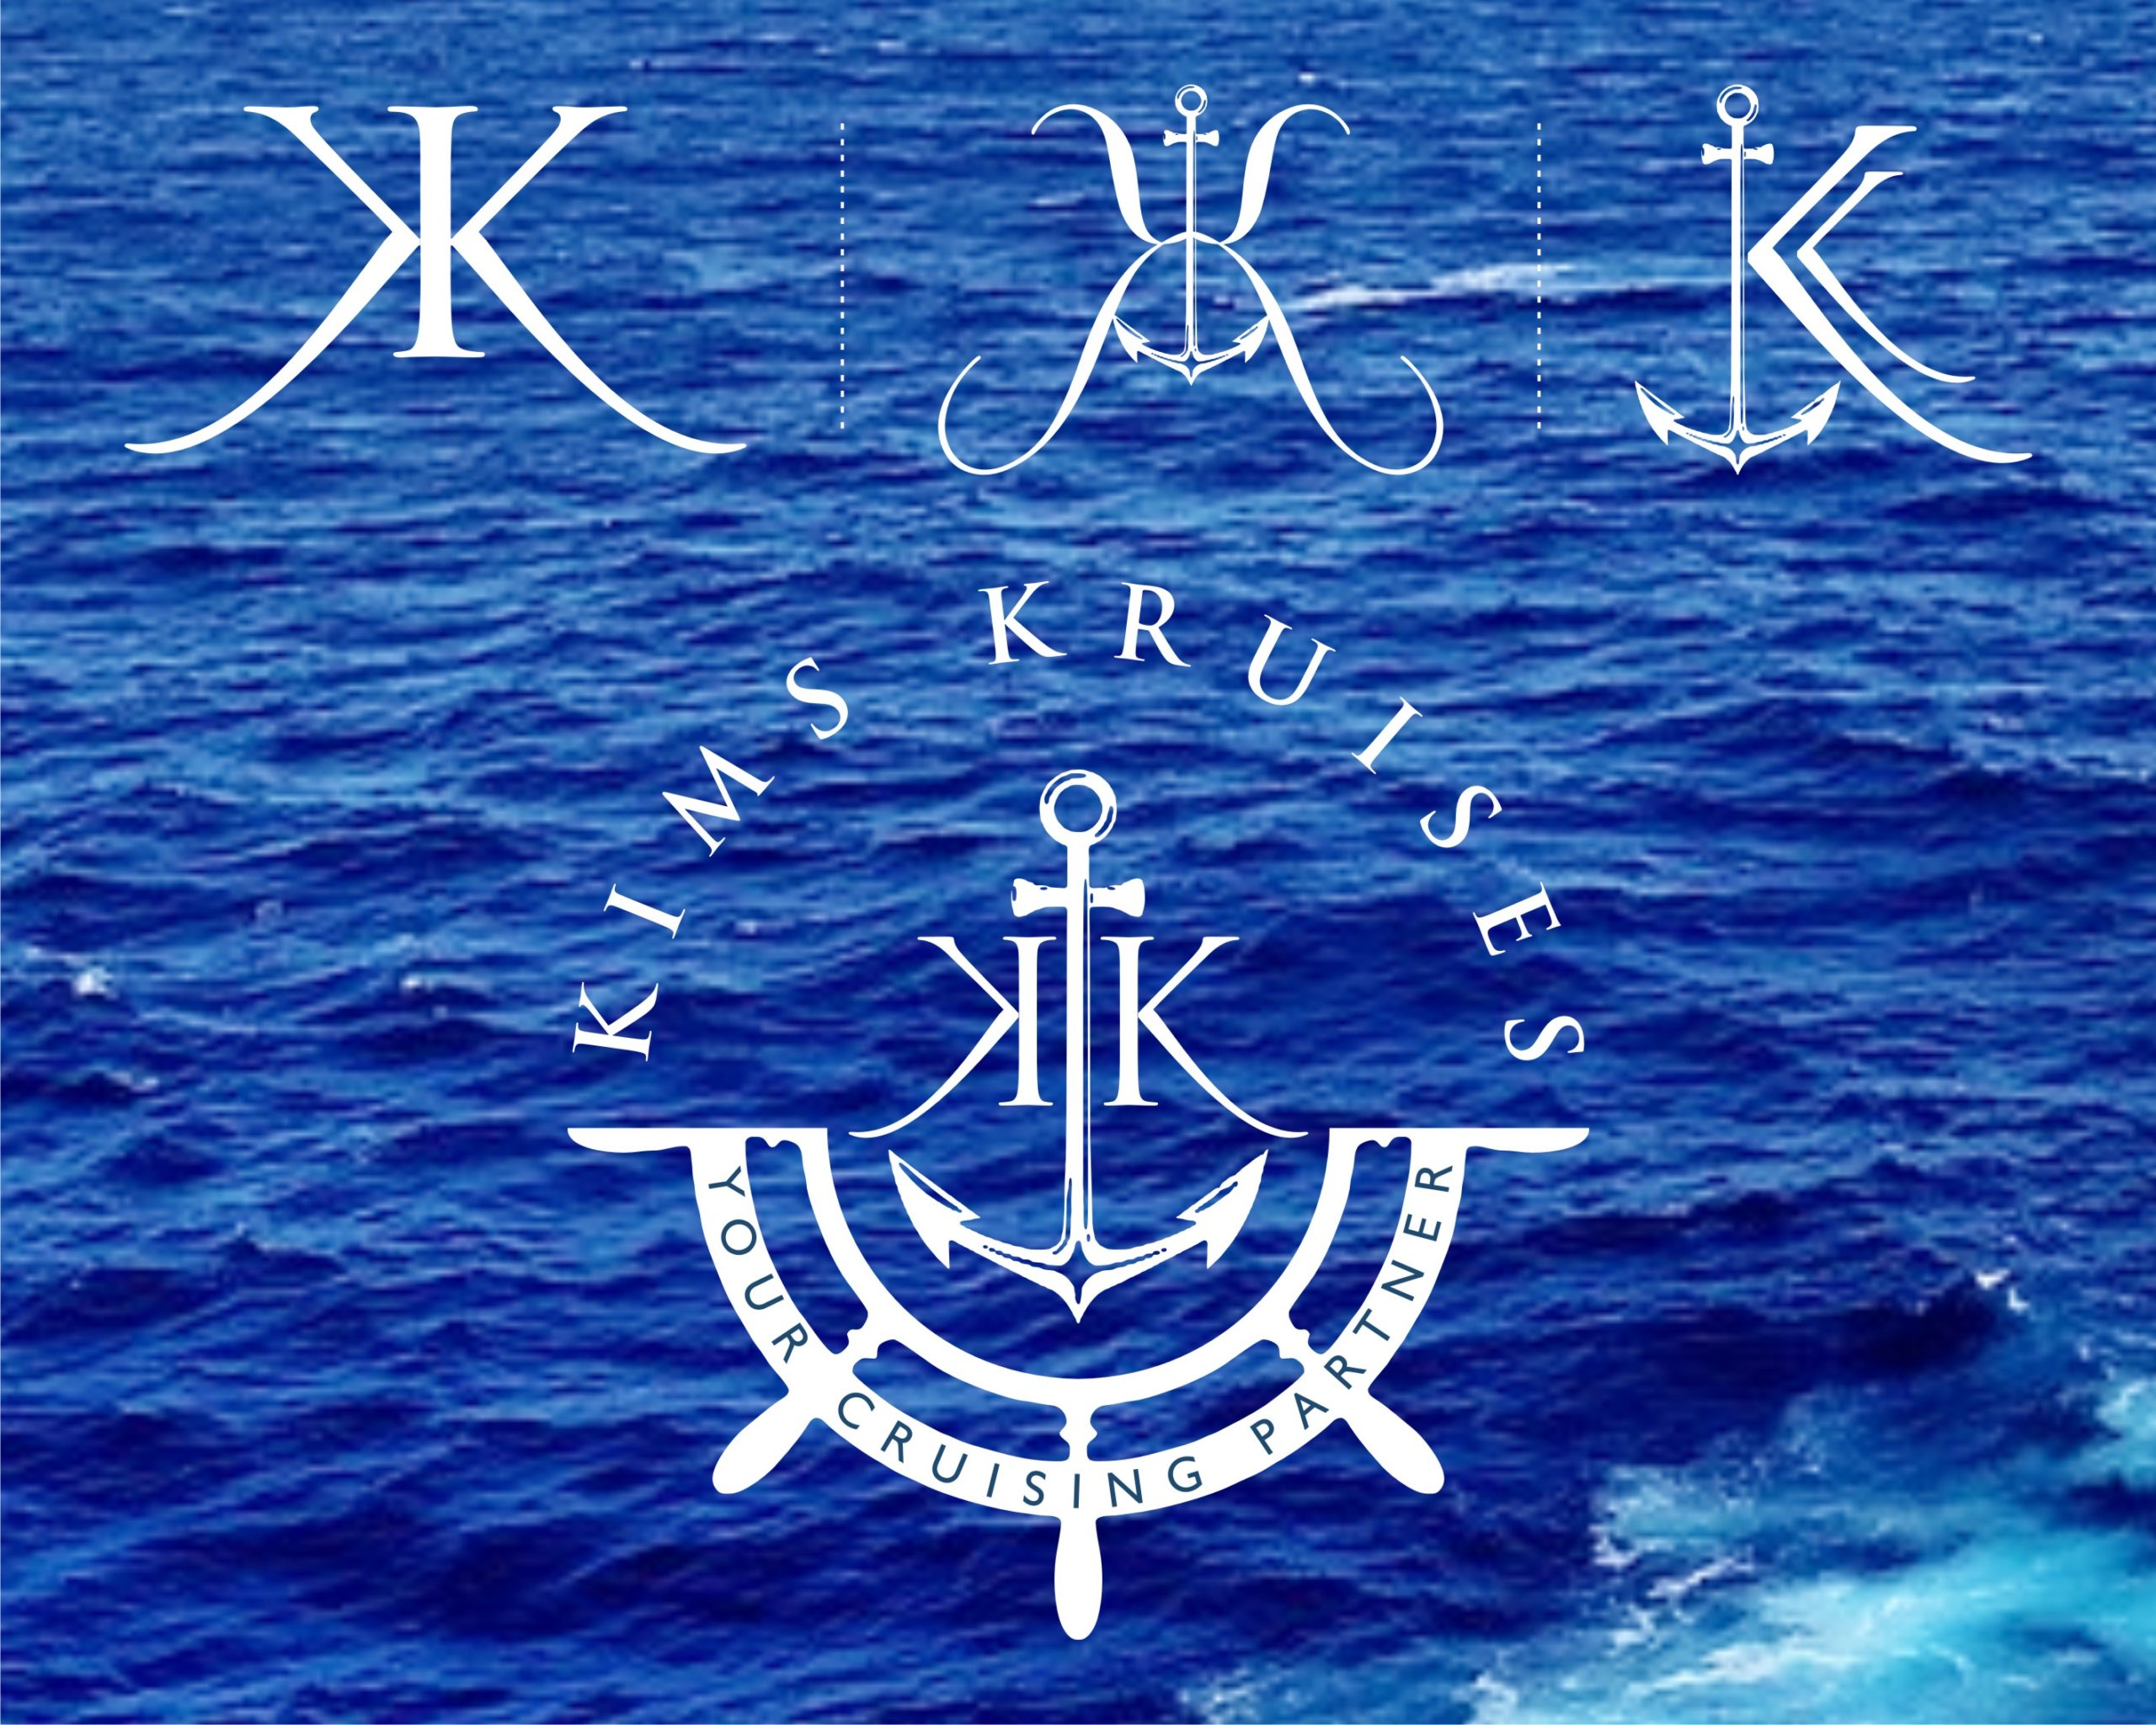 Kims-Cruises-image1